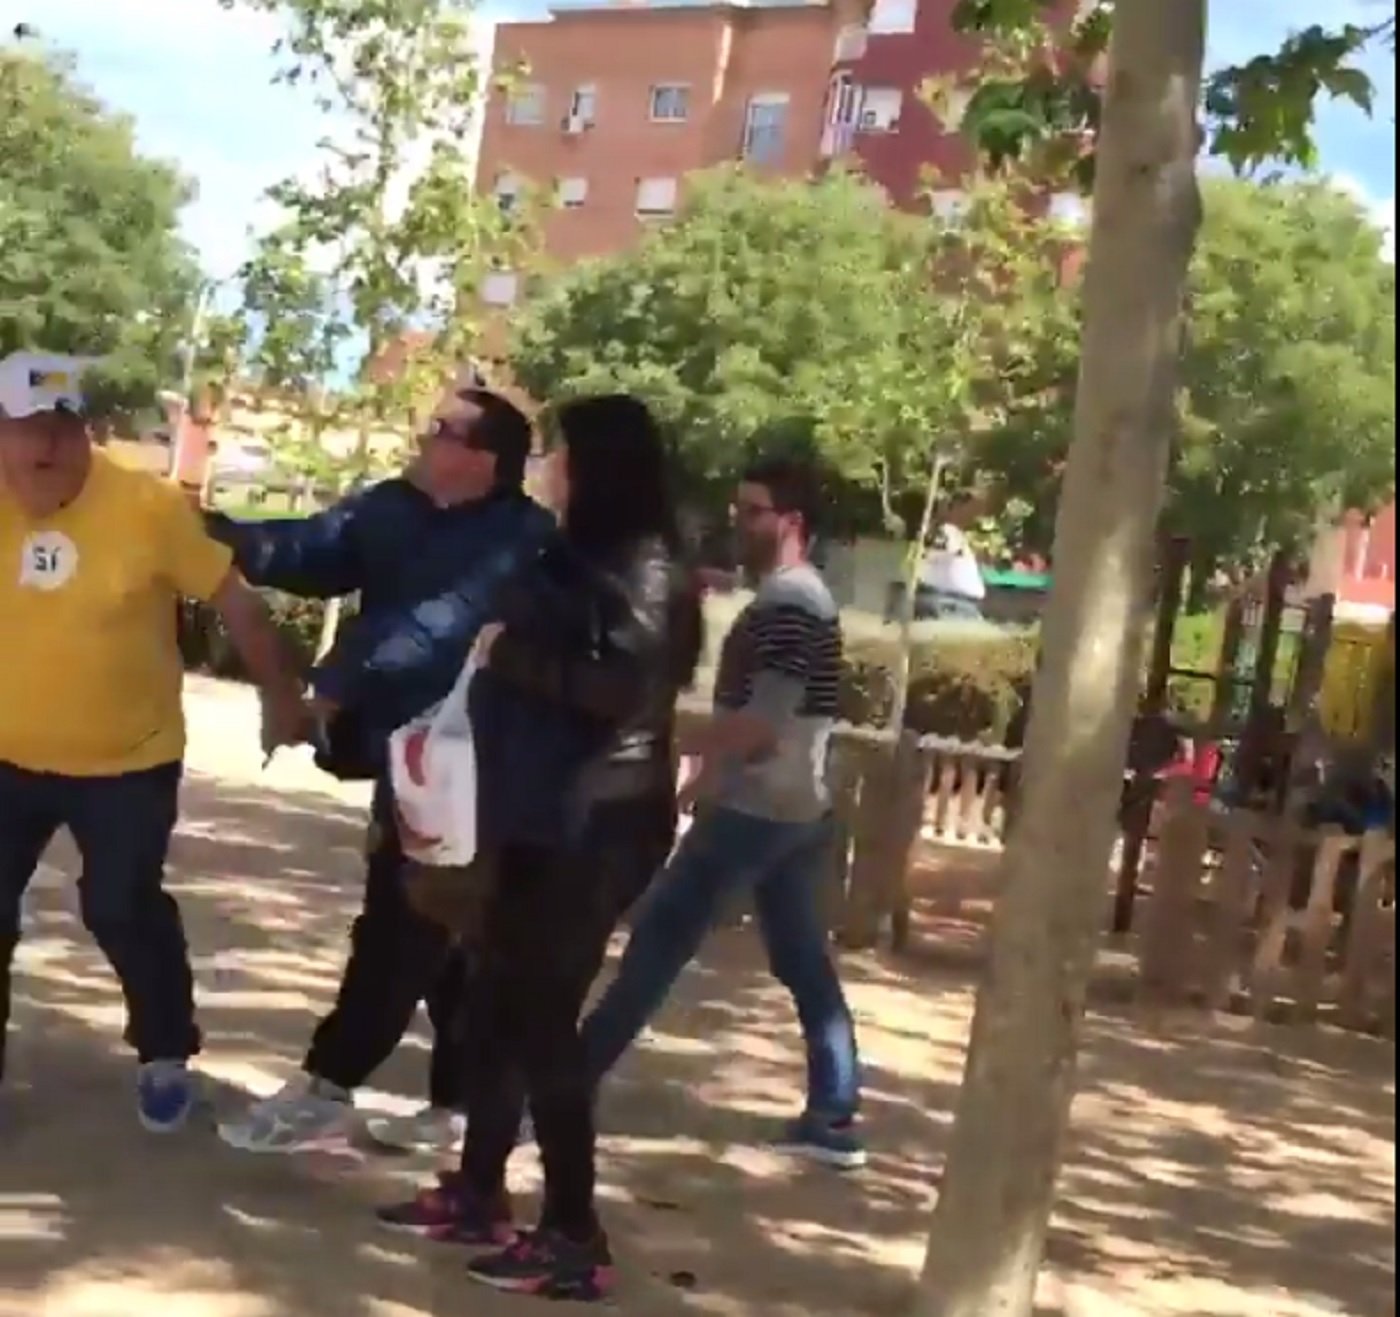 [VÍDEO] Increpan a un miembro de la ANC en Terrassa cuando repartía hojas del referéndum